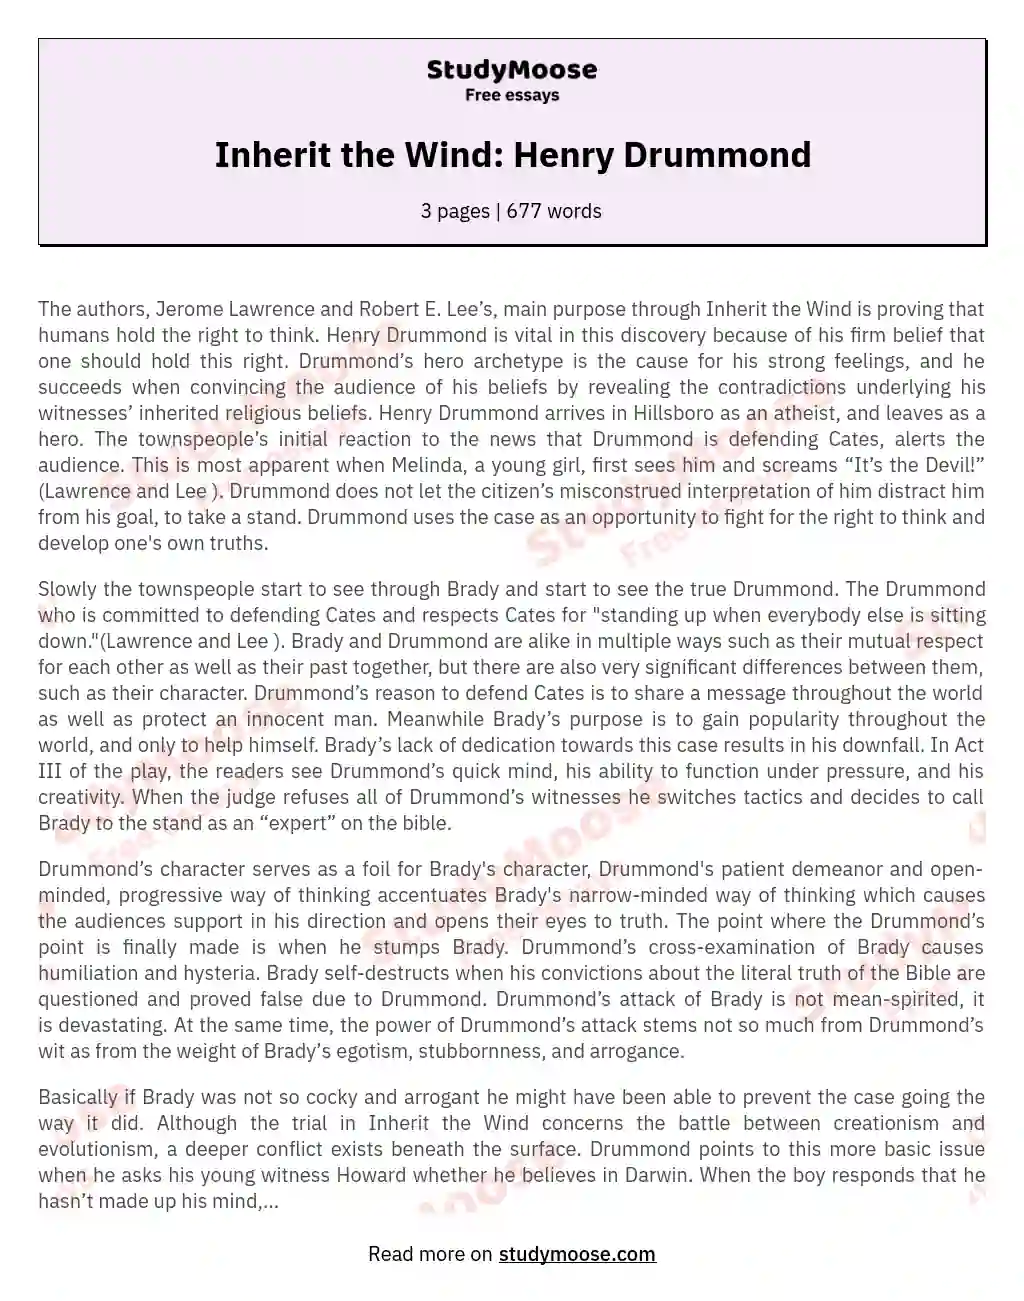 Inherit the Wind: Henry Drummond essay